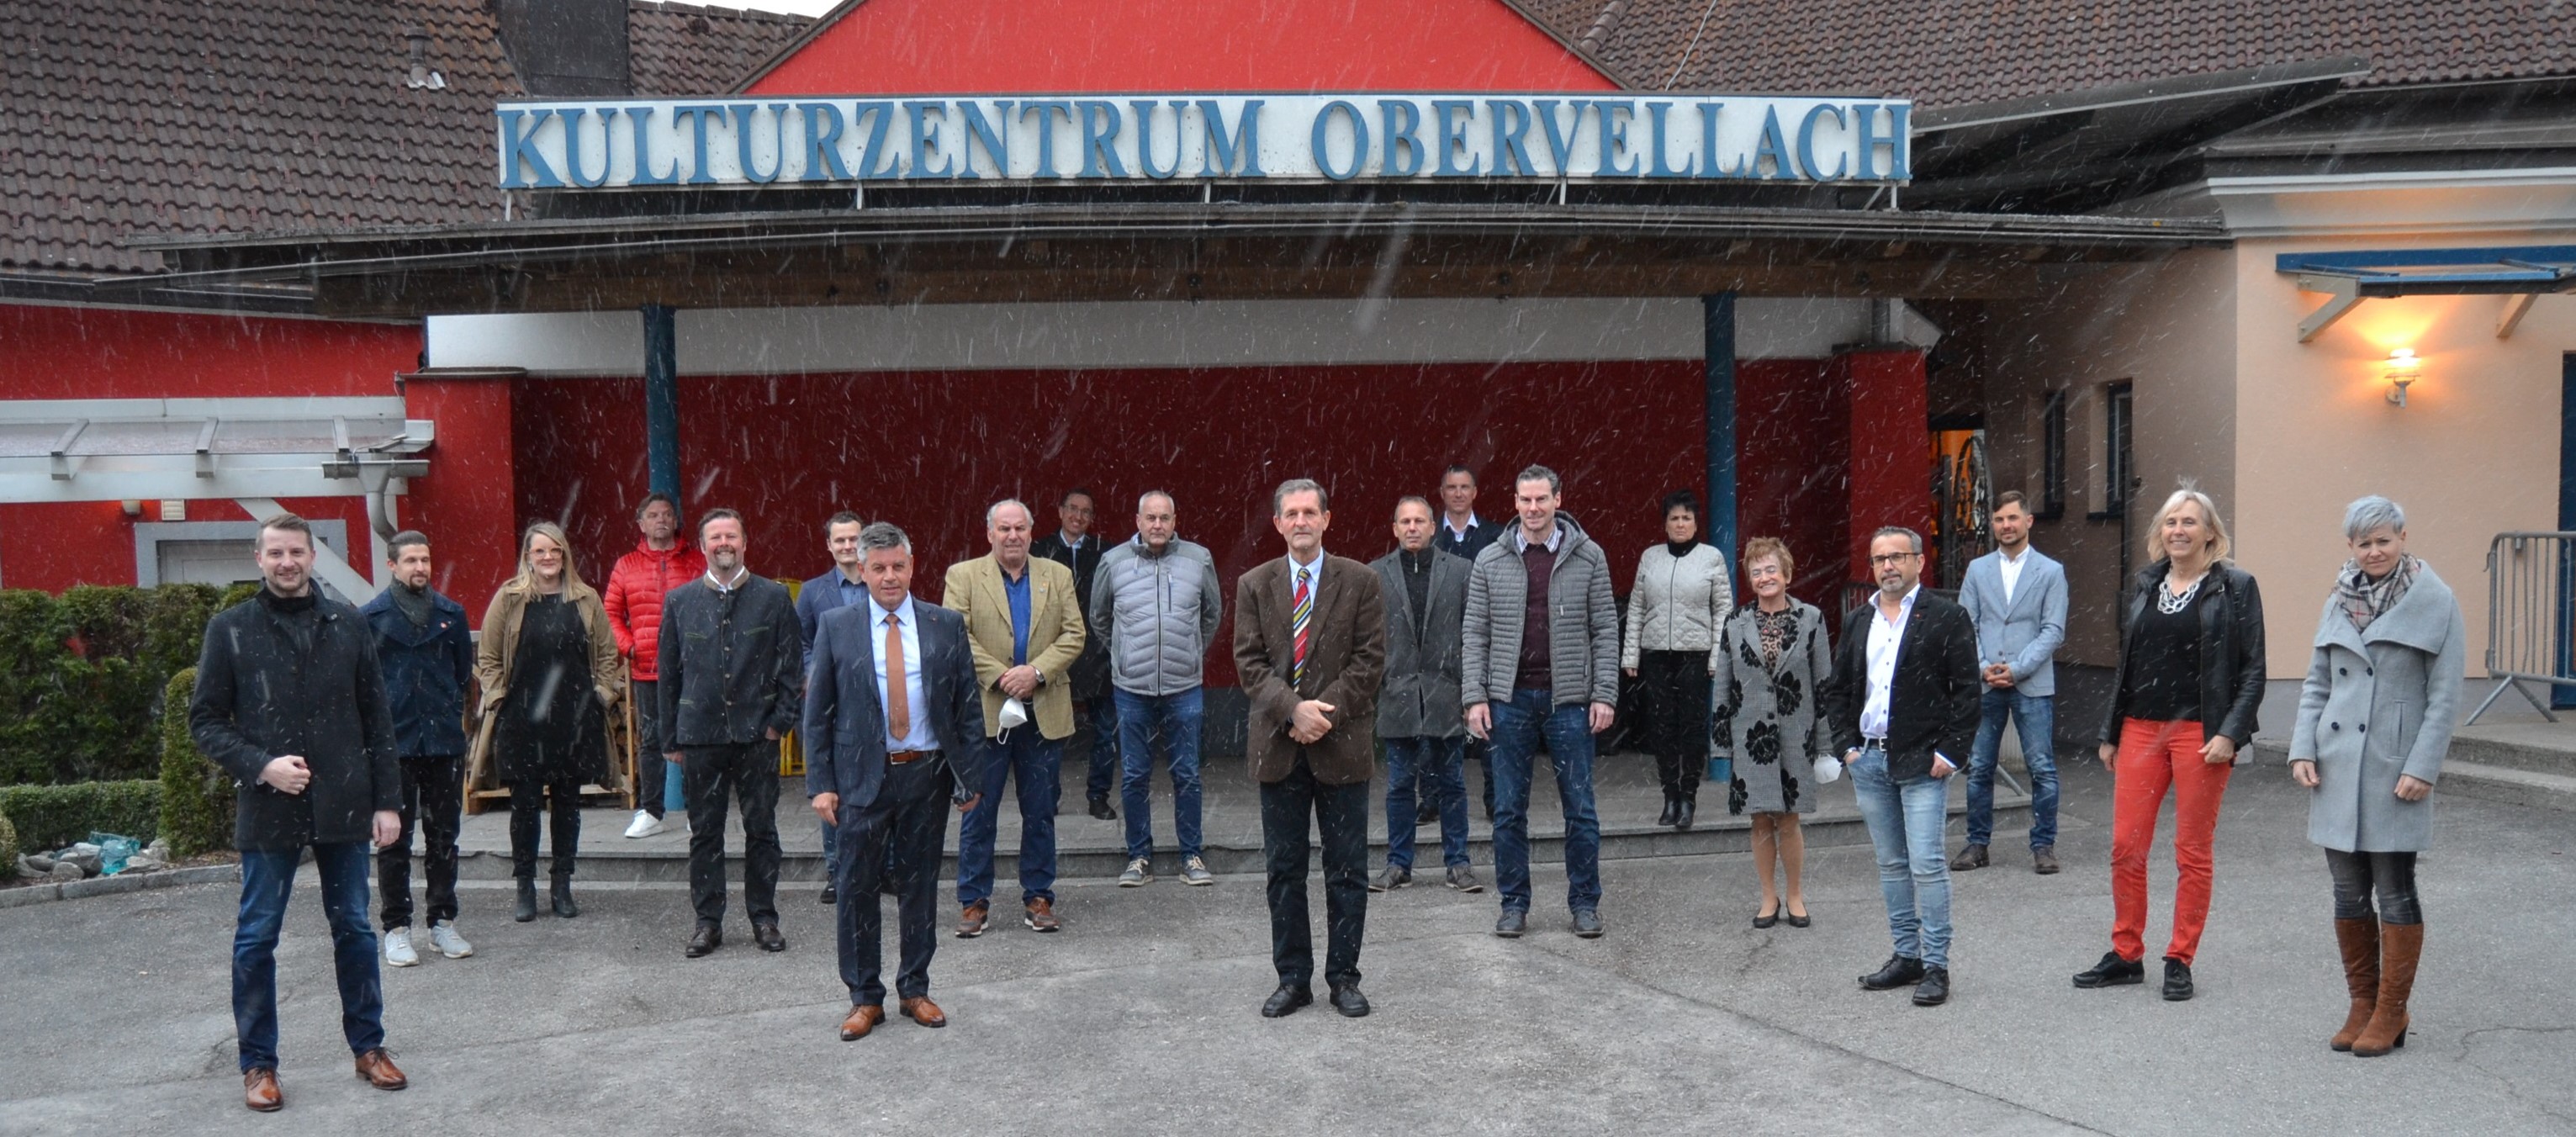 Der neue Obervellacher Gemeinderat mit Ersatzmitglieder und Bezirkshauptmann Herr Mag. Dr. Klaus Brandner. (April 2021)